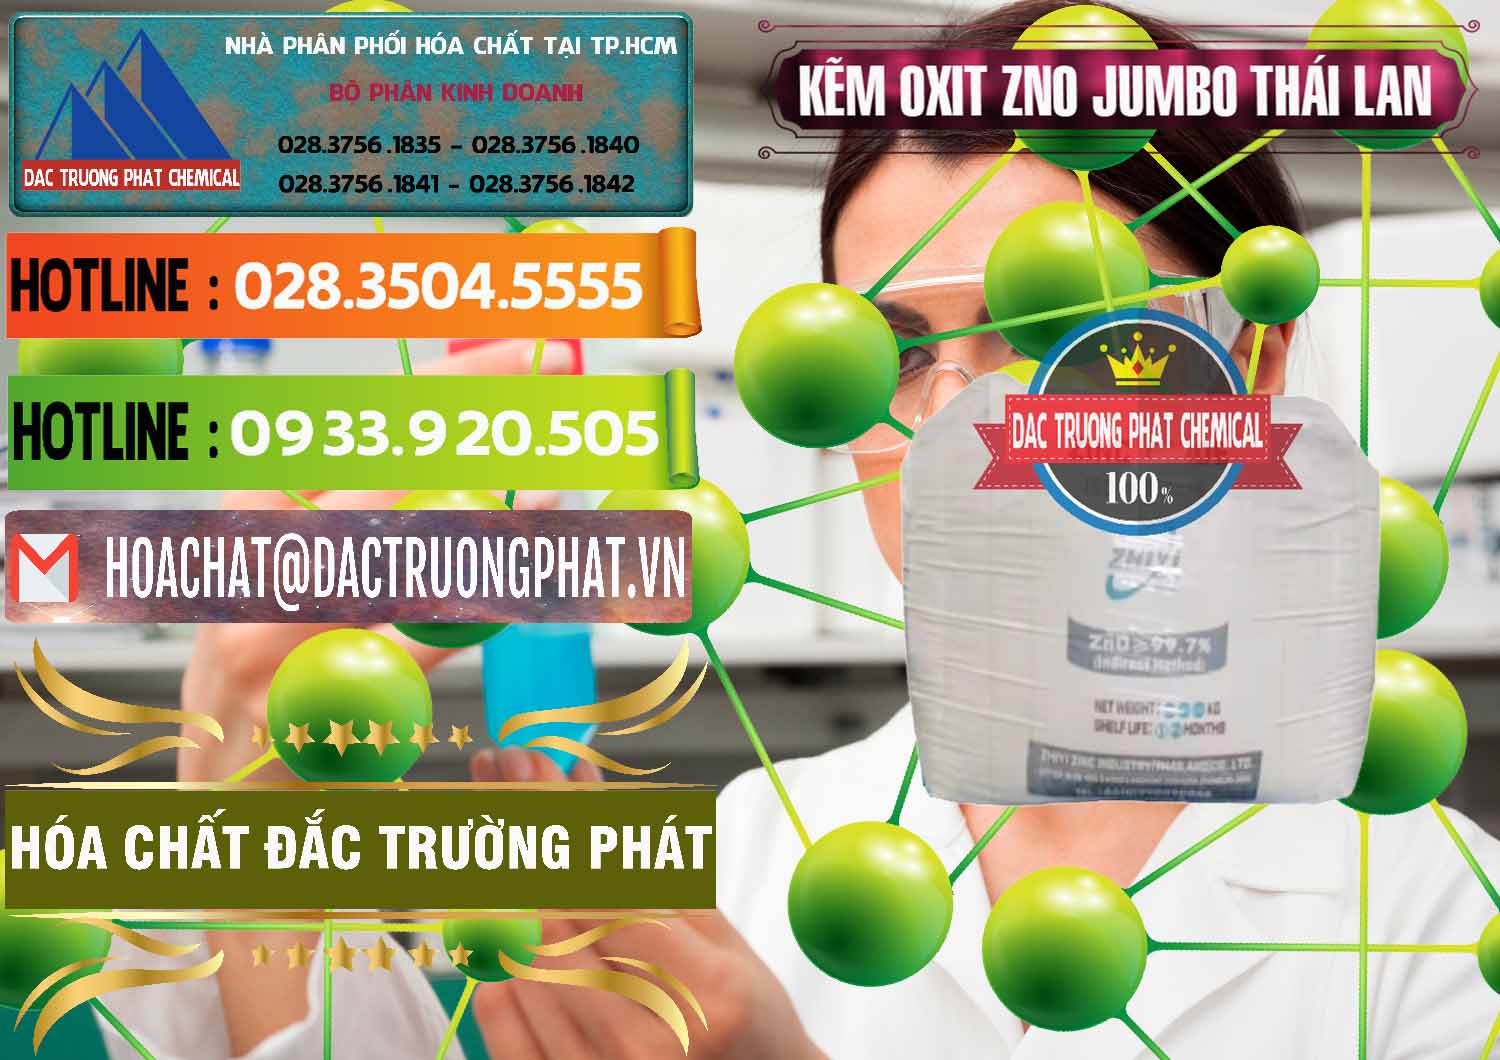 Bán ( phân phối ) Zinc Oxide - Bột Kẽm Oxit ZNO Jumbo Bành Thái Lan Thailand - 0370 - Đơn vị cung cấp - phân phối hóa chất tại TP.HCM - cungcaphoachat.com.vn